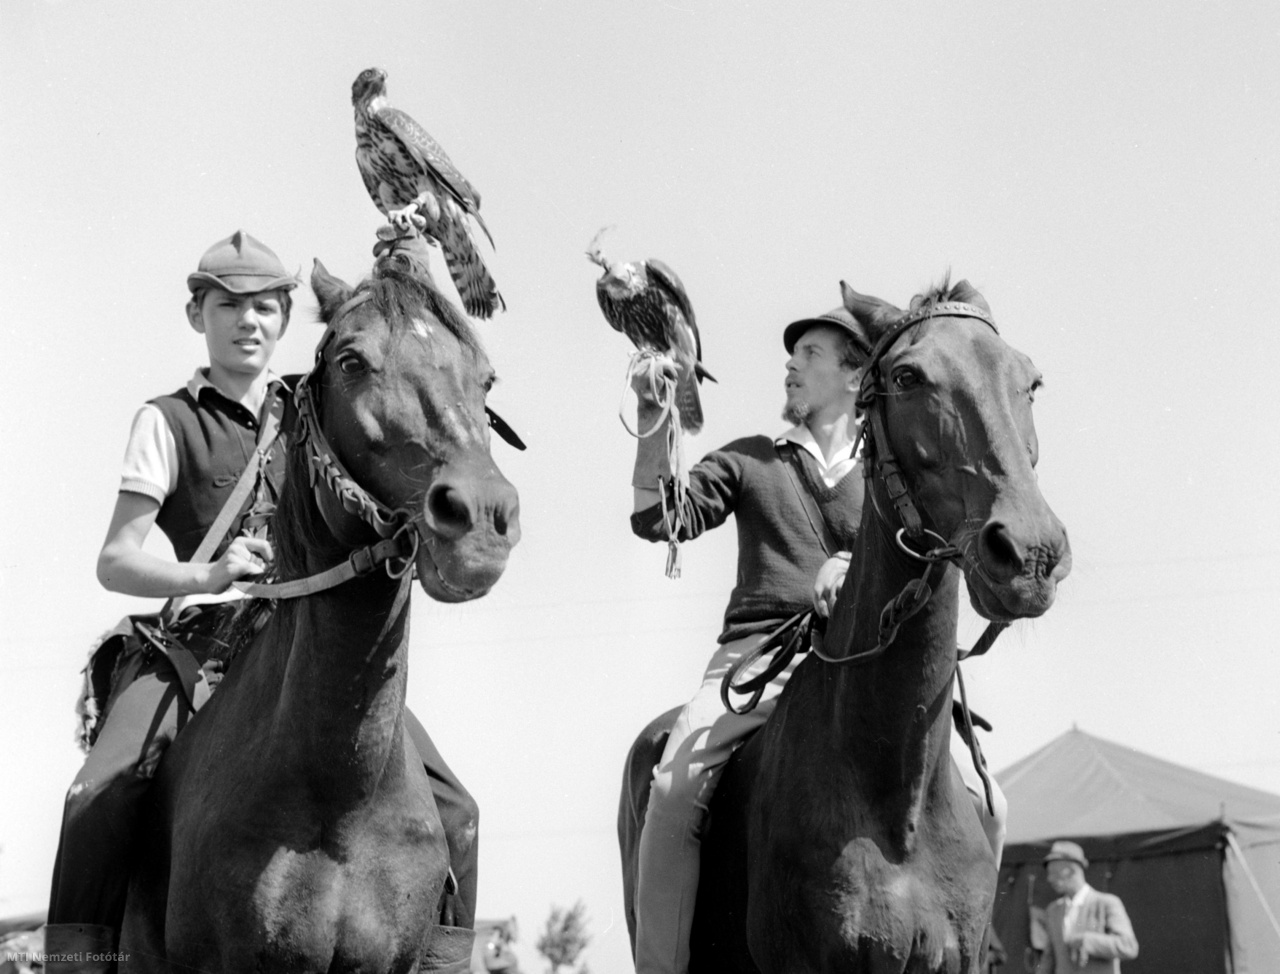 Kiskunfélegyháza, 1963. augusztus 20. Lóháton indulnak röptetésre vadászmadarukkal a solymászok a Kiskunfélegyházán megrendezett országos solymásztalálkozón augusztus 20-án